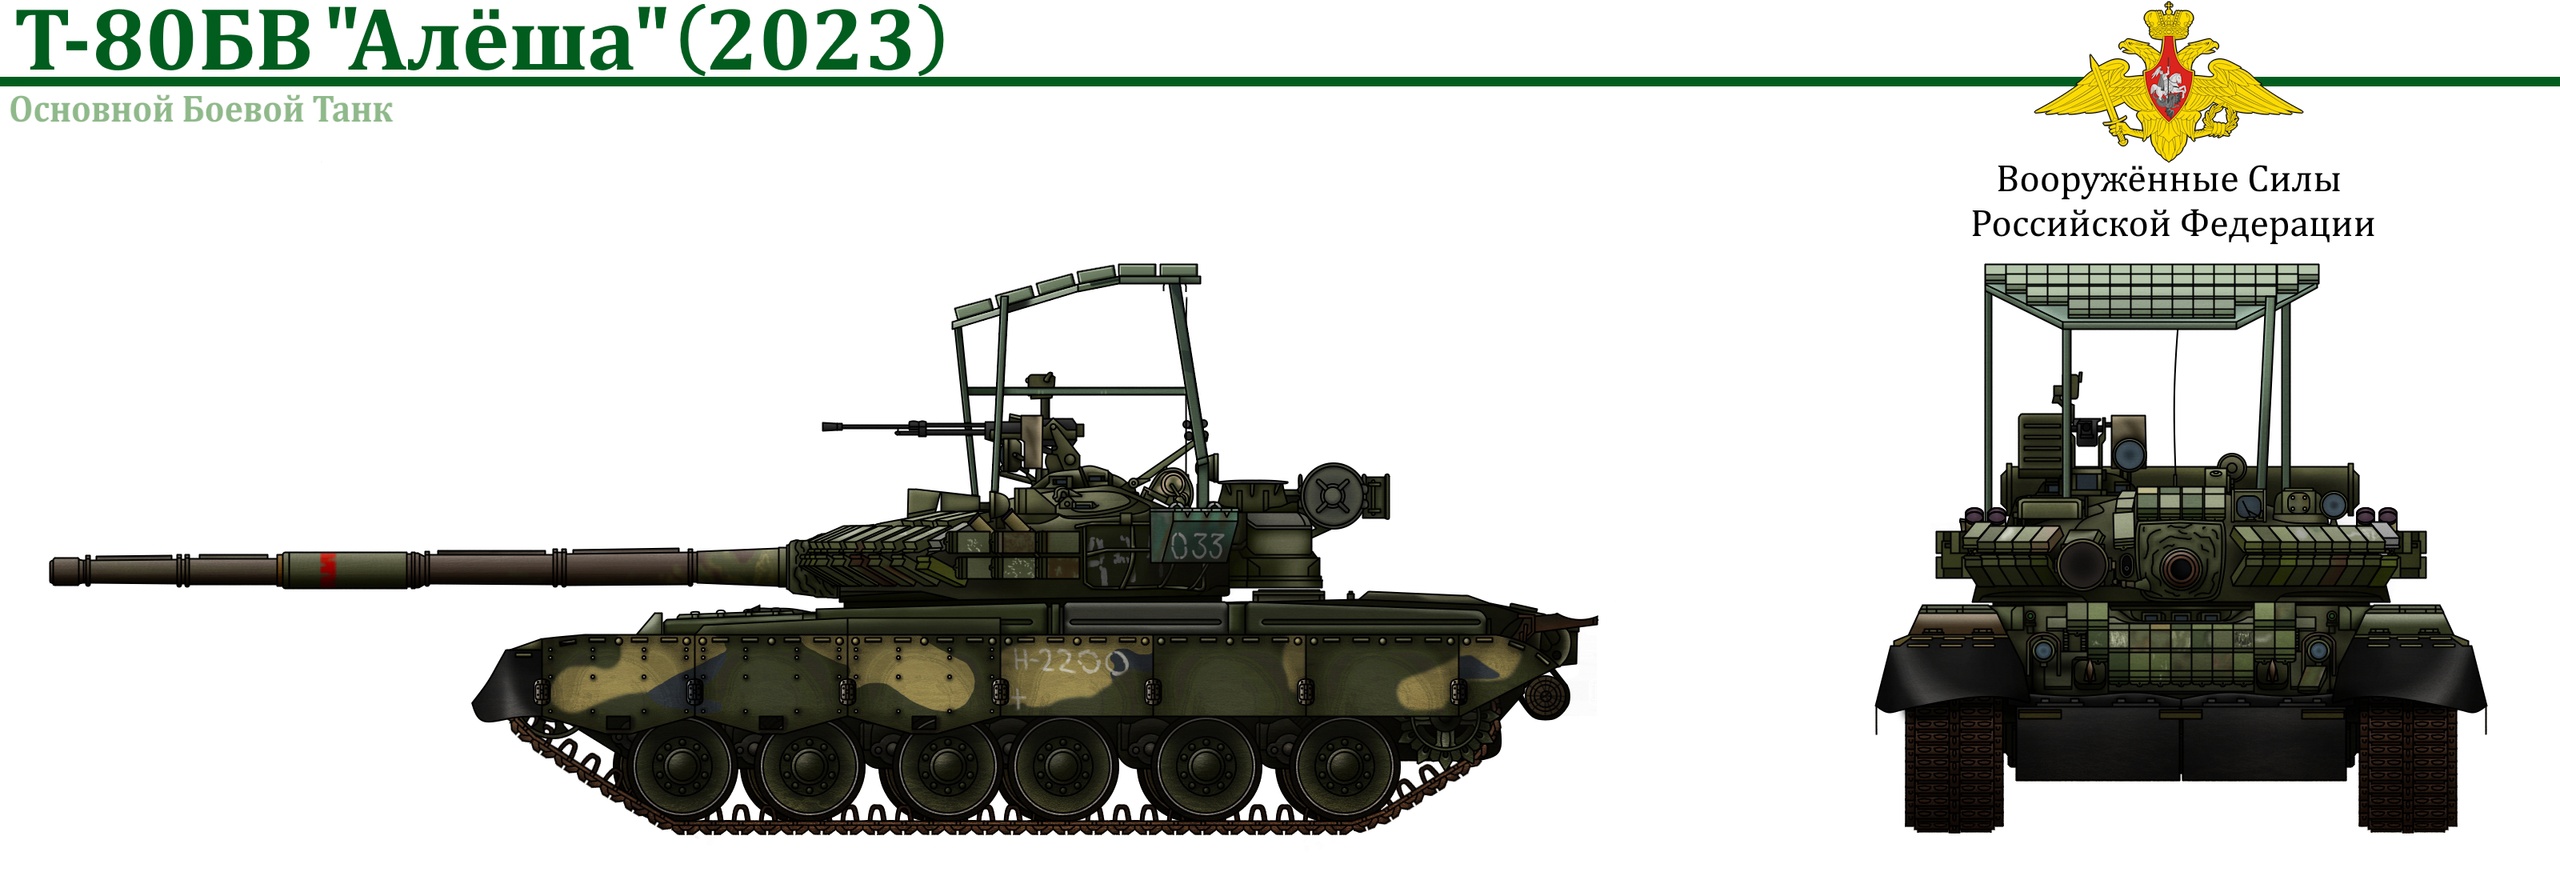 Все (почти) иллюстрации модификаций богоподобного танка Т-80. Вторая часть